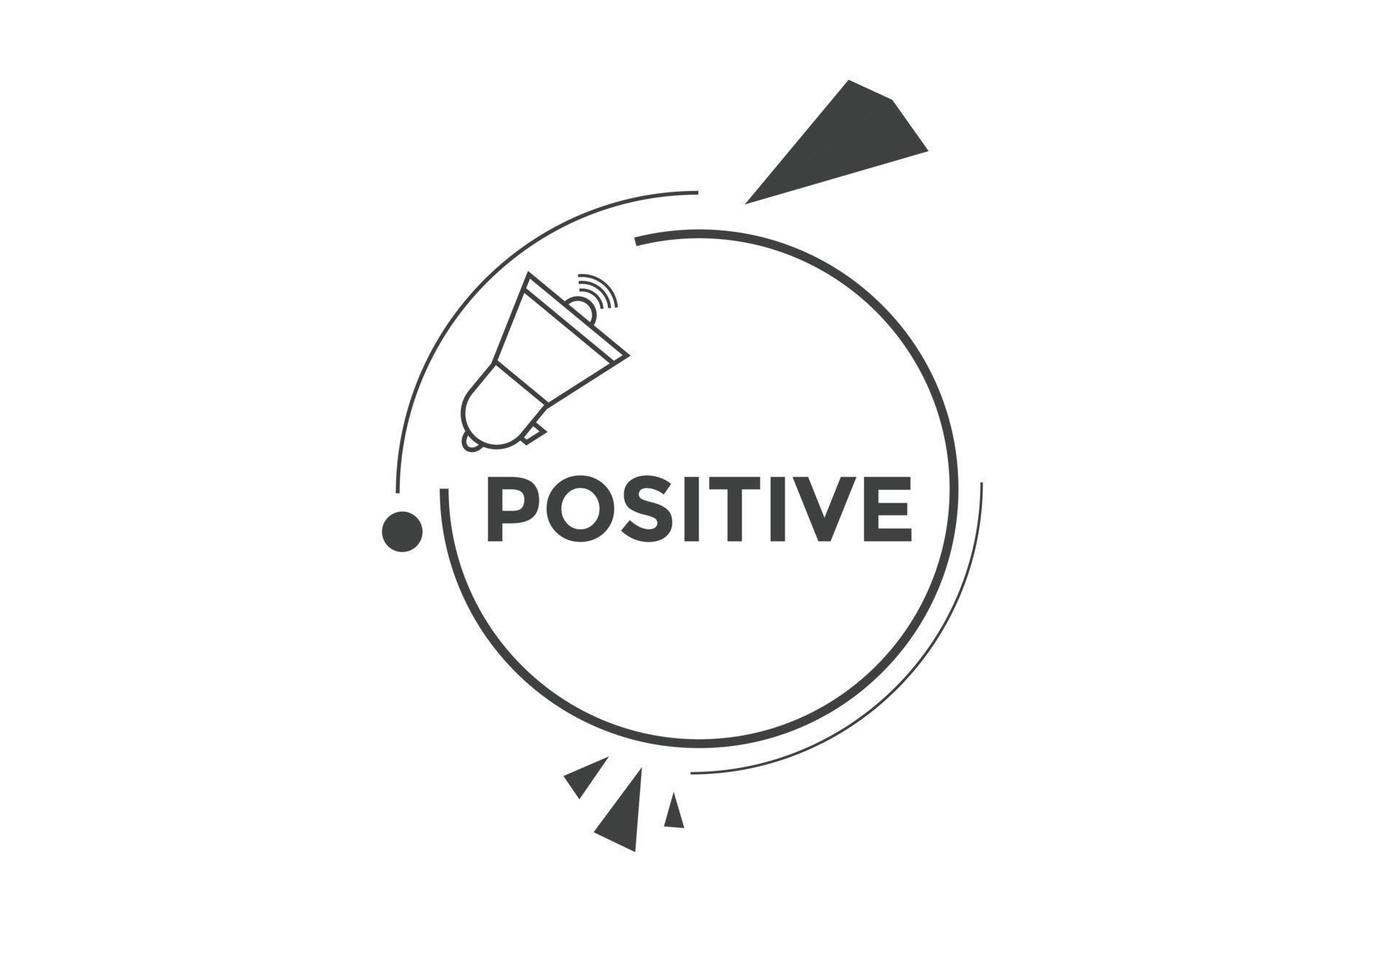 botón positivo. burbuja de diálogo. banner web colorido positivo. ilustración vectorial plantilla de signo de etiqueta positiva vector